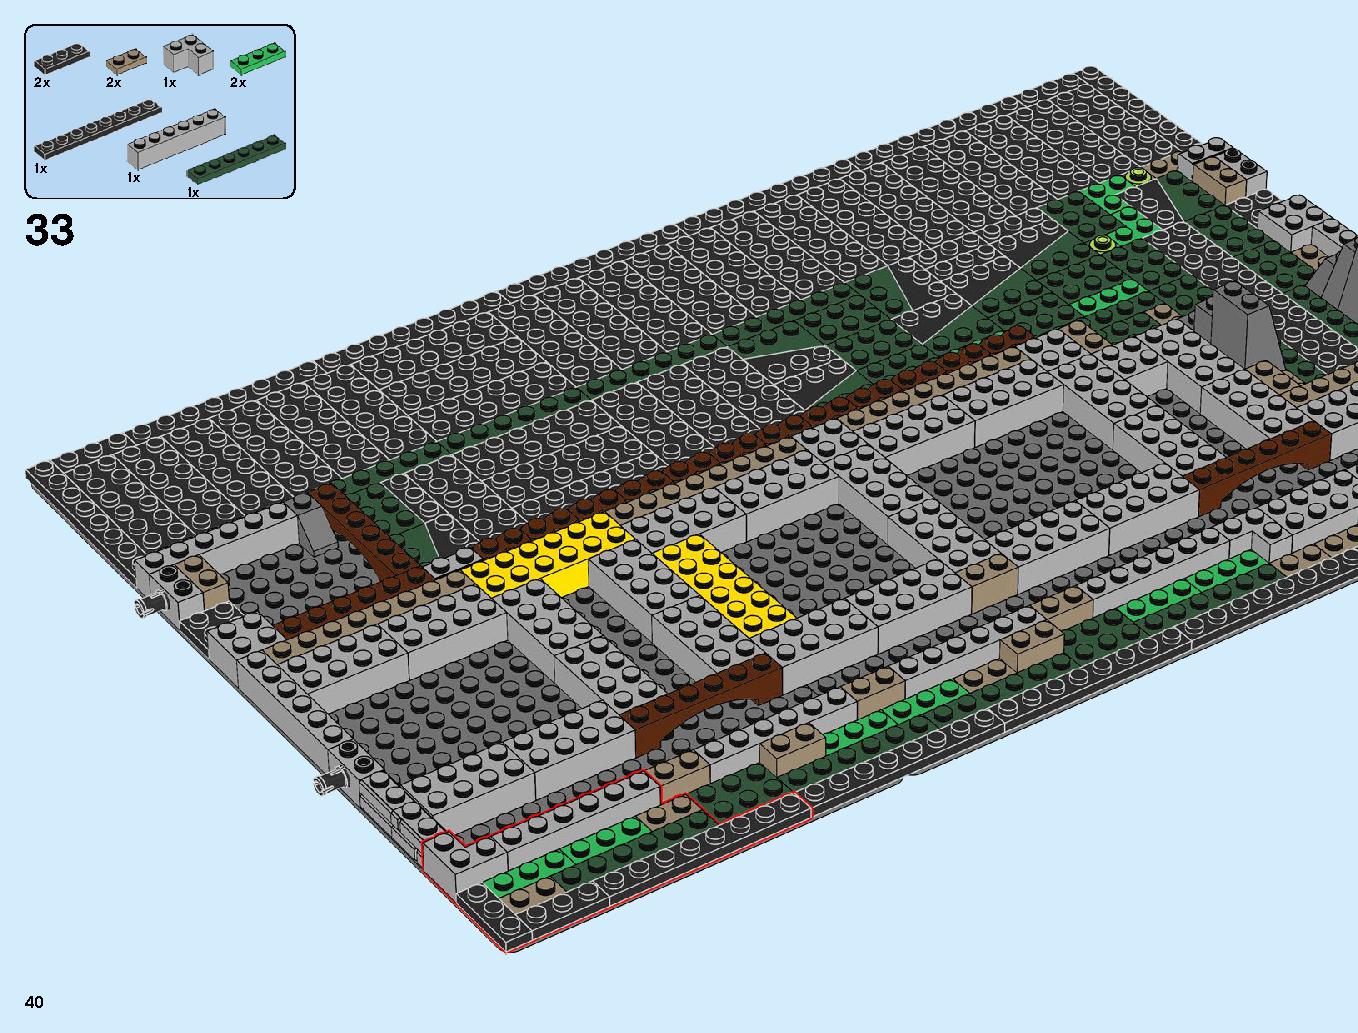 ニンジャゴーシティ・ポートパーク 70657 レゴの商品情報 レゴの説明書・組立方法 40 page